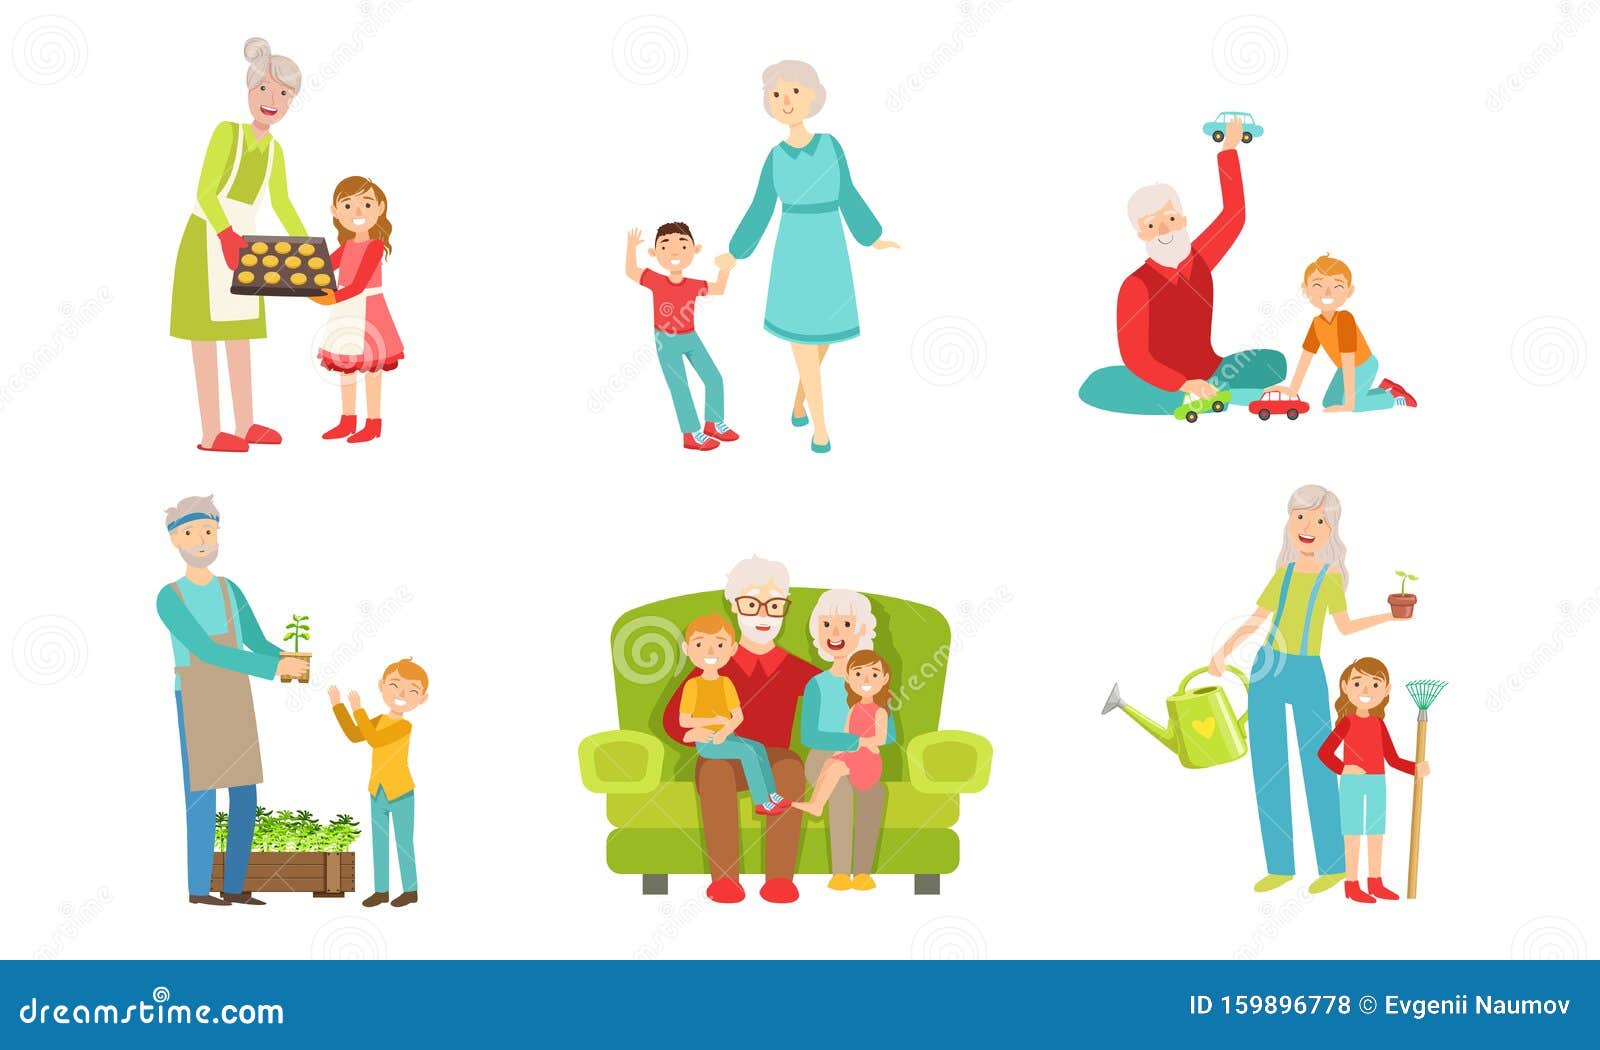 картинки бабушки и дедушки для детей